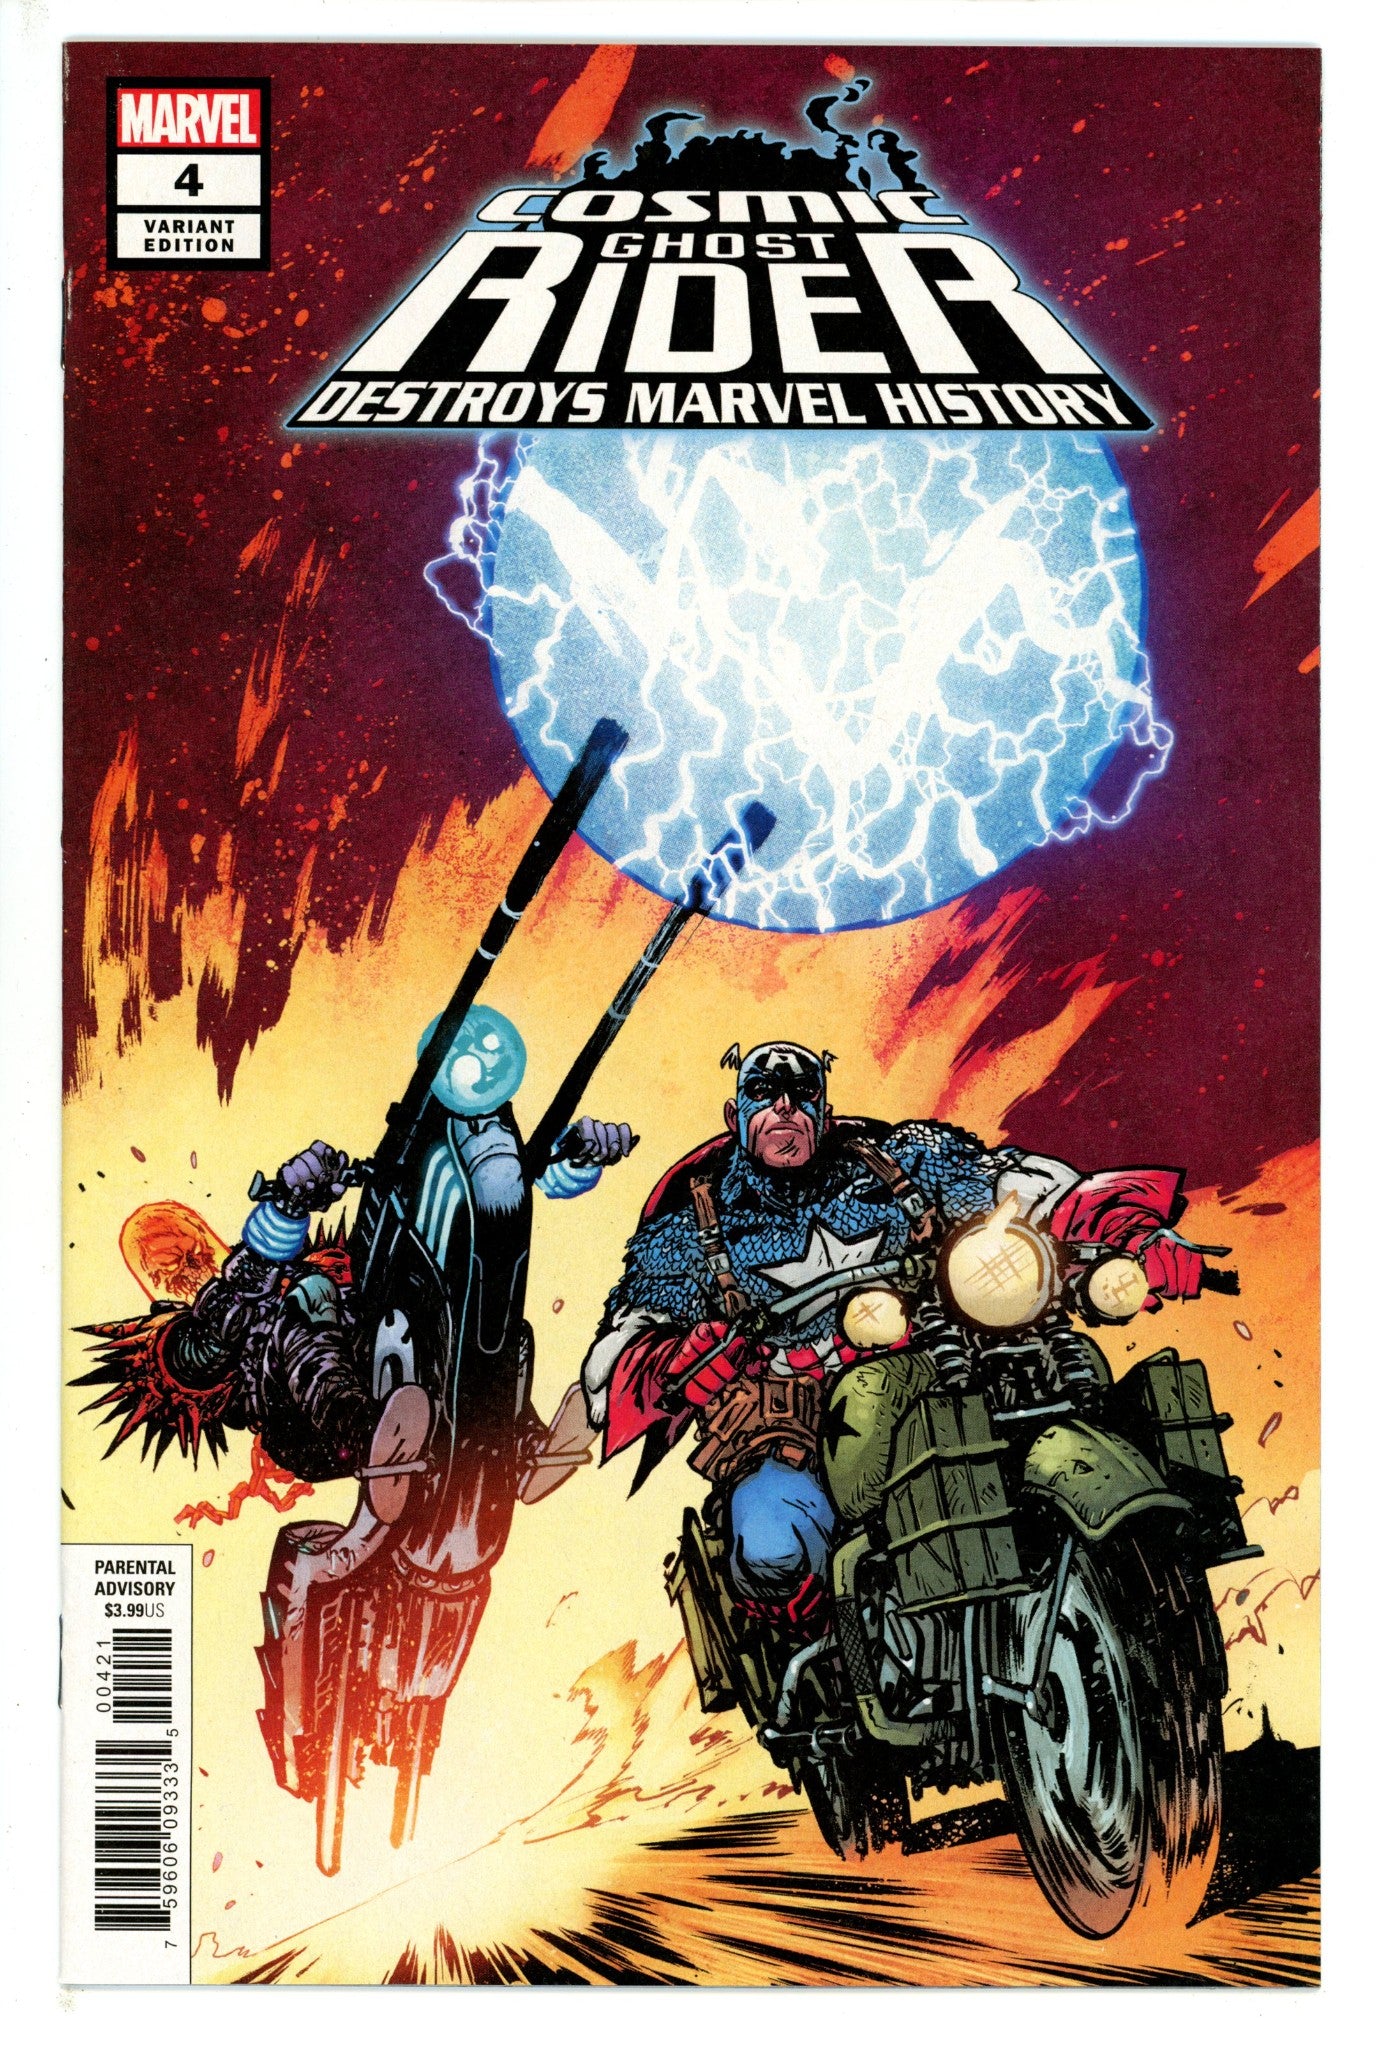 Cosmic Ghost Rider Destroys Marvel History 4 Johnson Variant (2019)